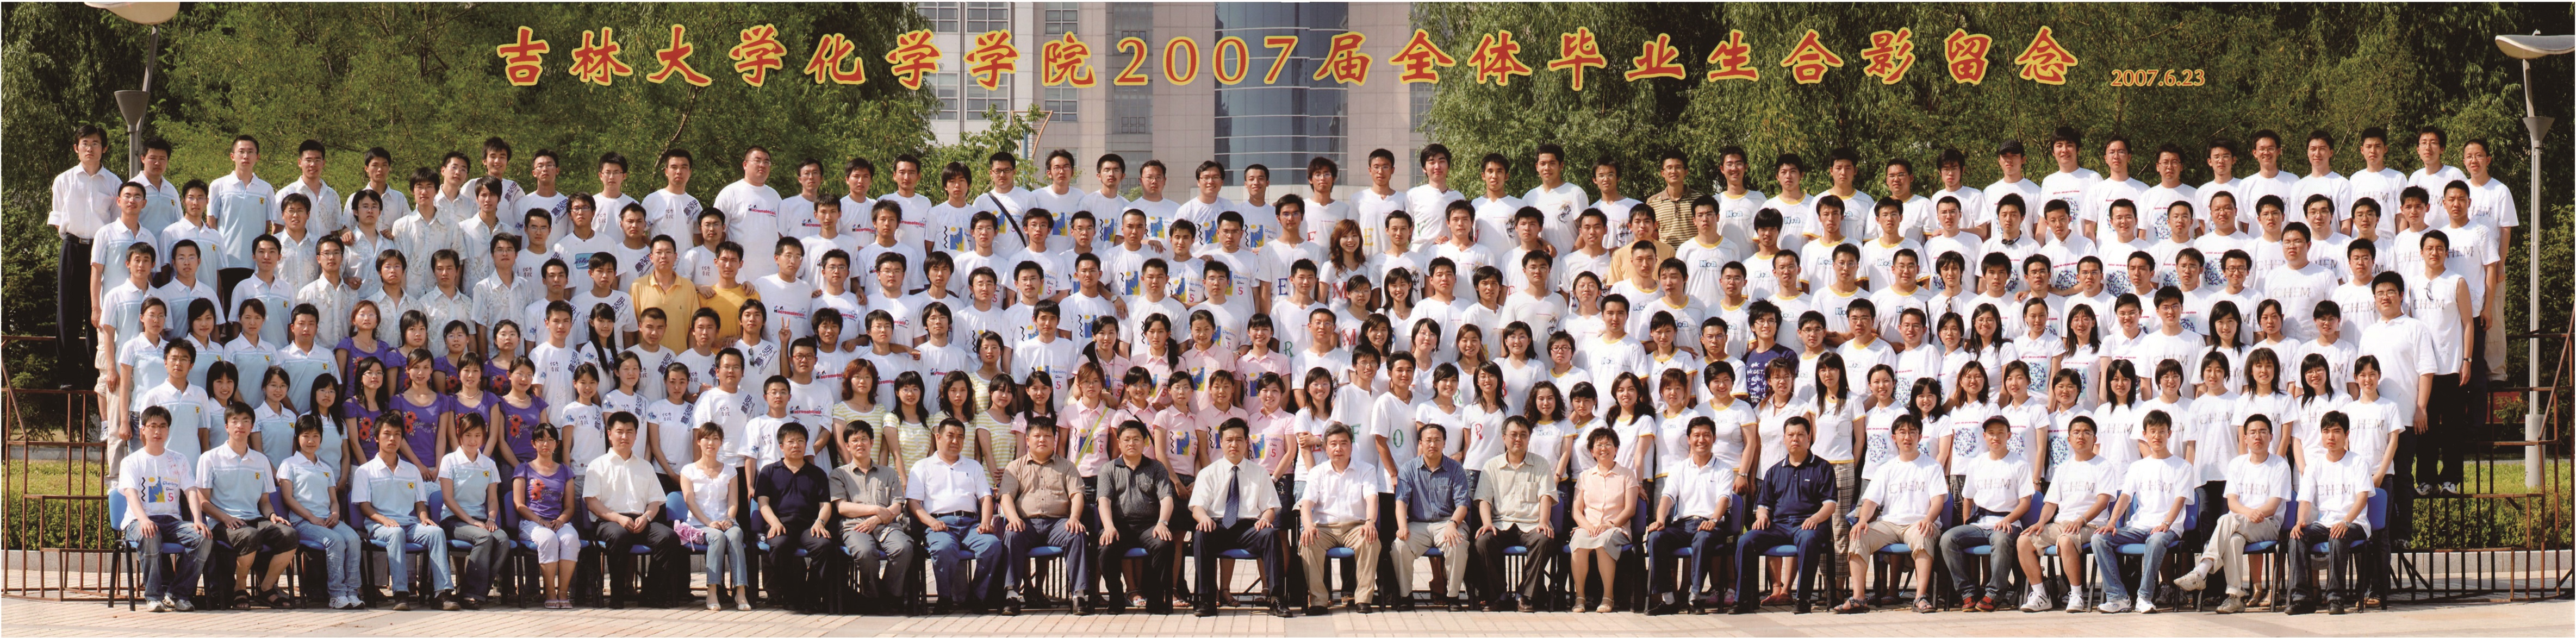 4066金沙(中国)责任有限公司官网2007届本科生毕业合影